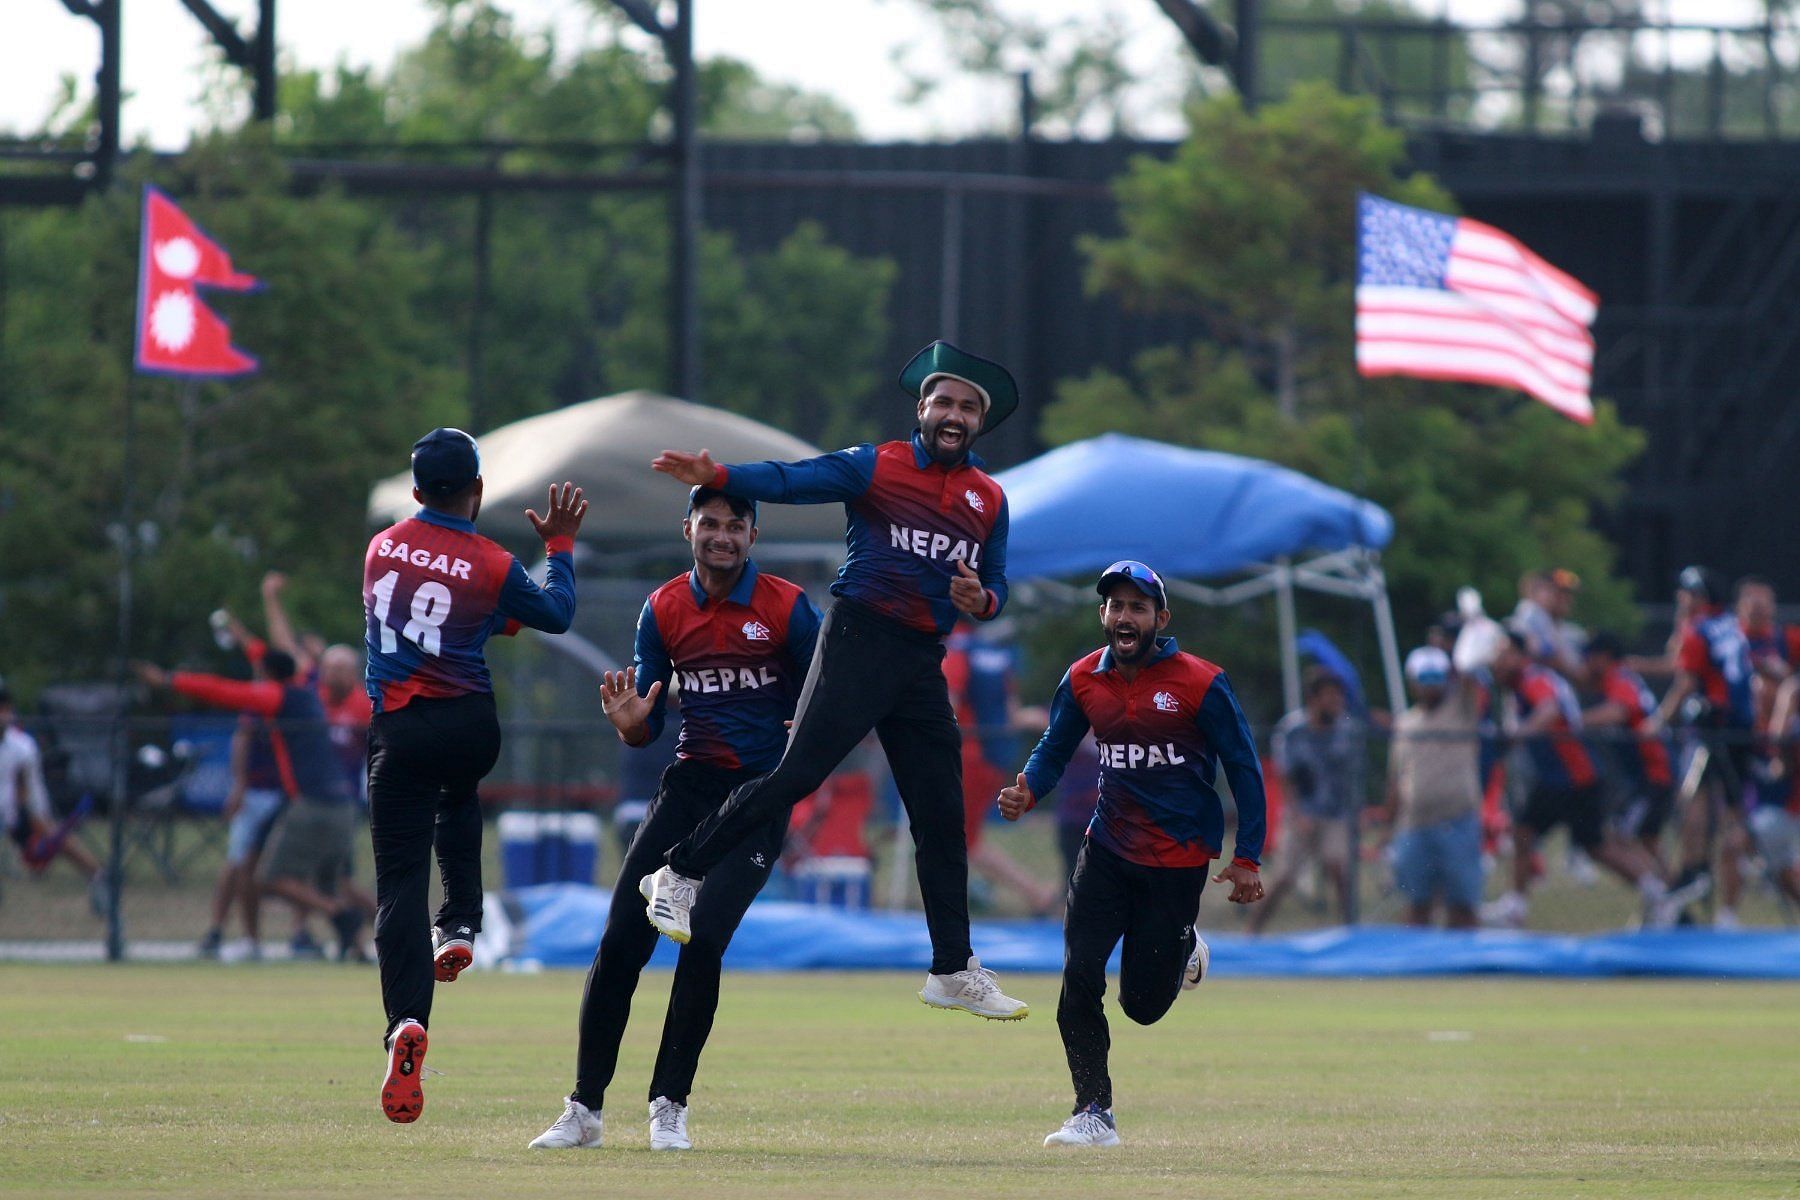 नेपाल की टीम ने जबरदस्त प्रदर्शन किया (Photo Credit - Nepal Cricket)